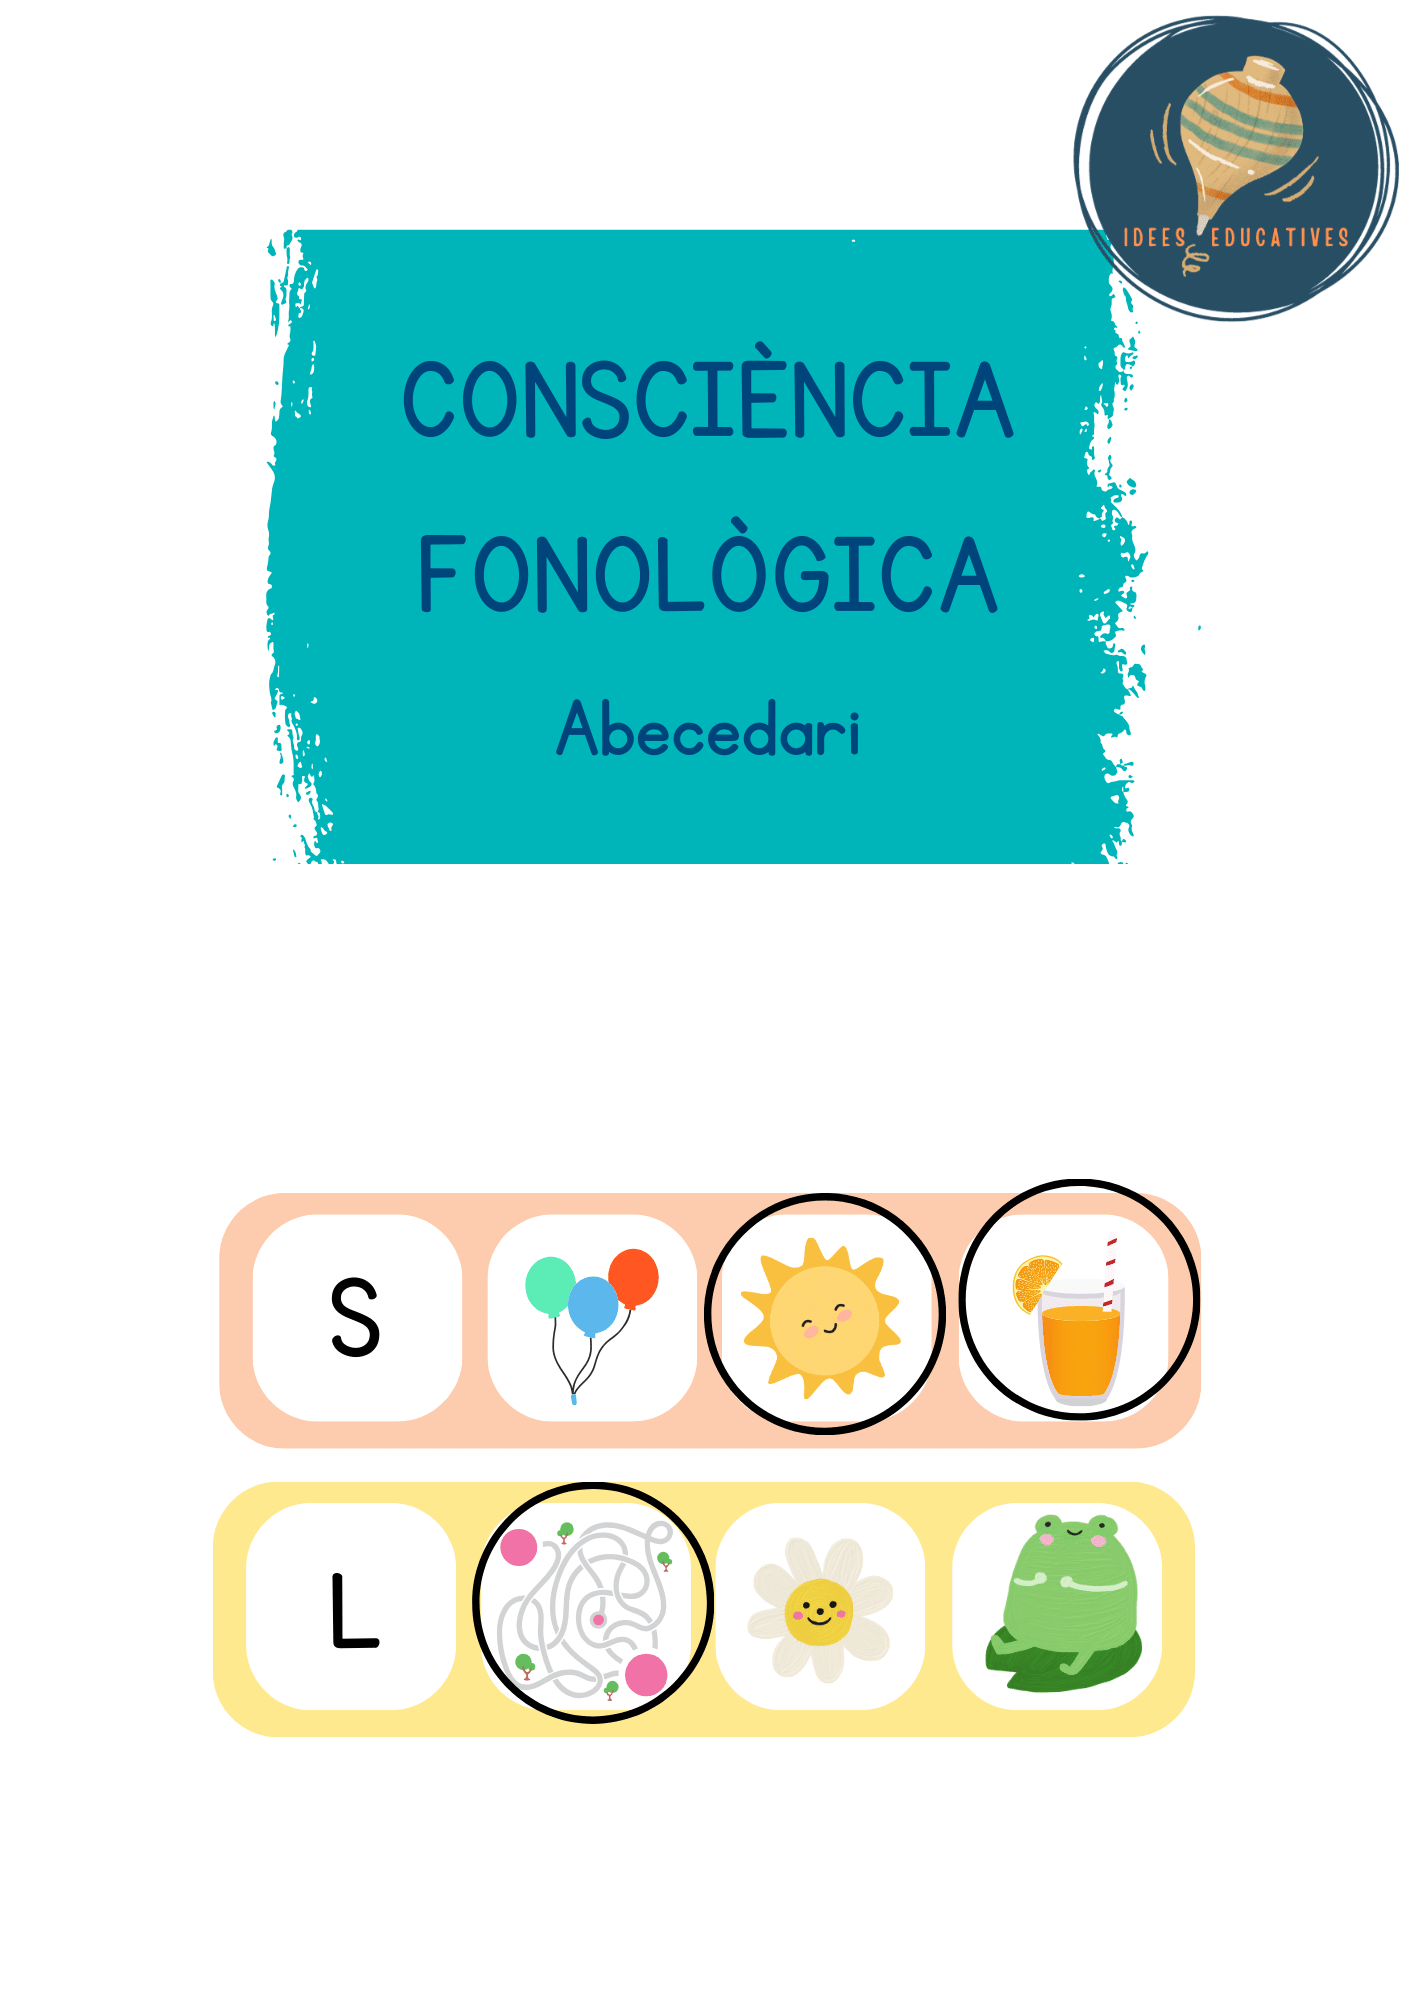 Consciència fonològica (abecedari)